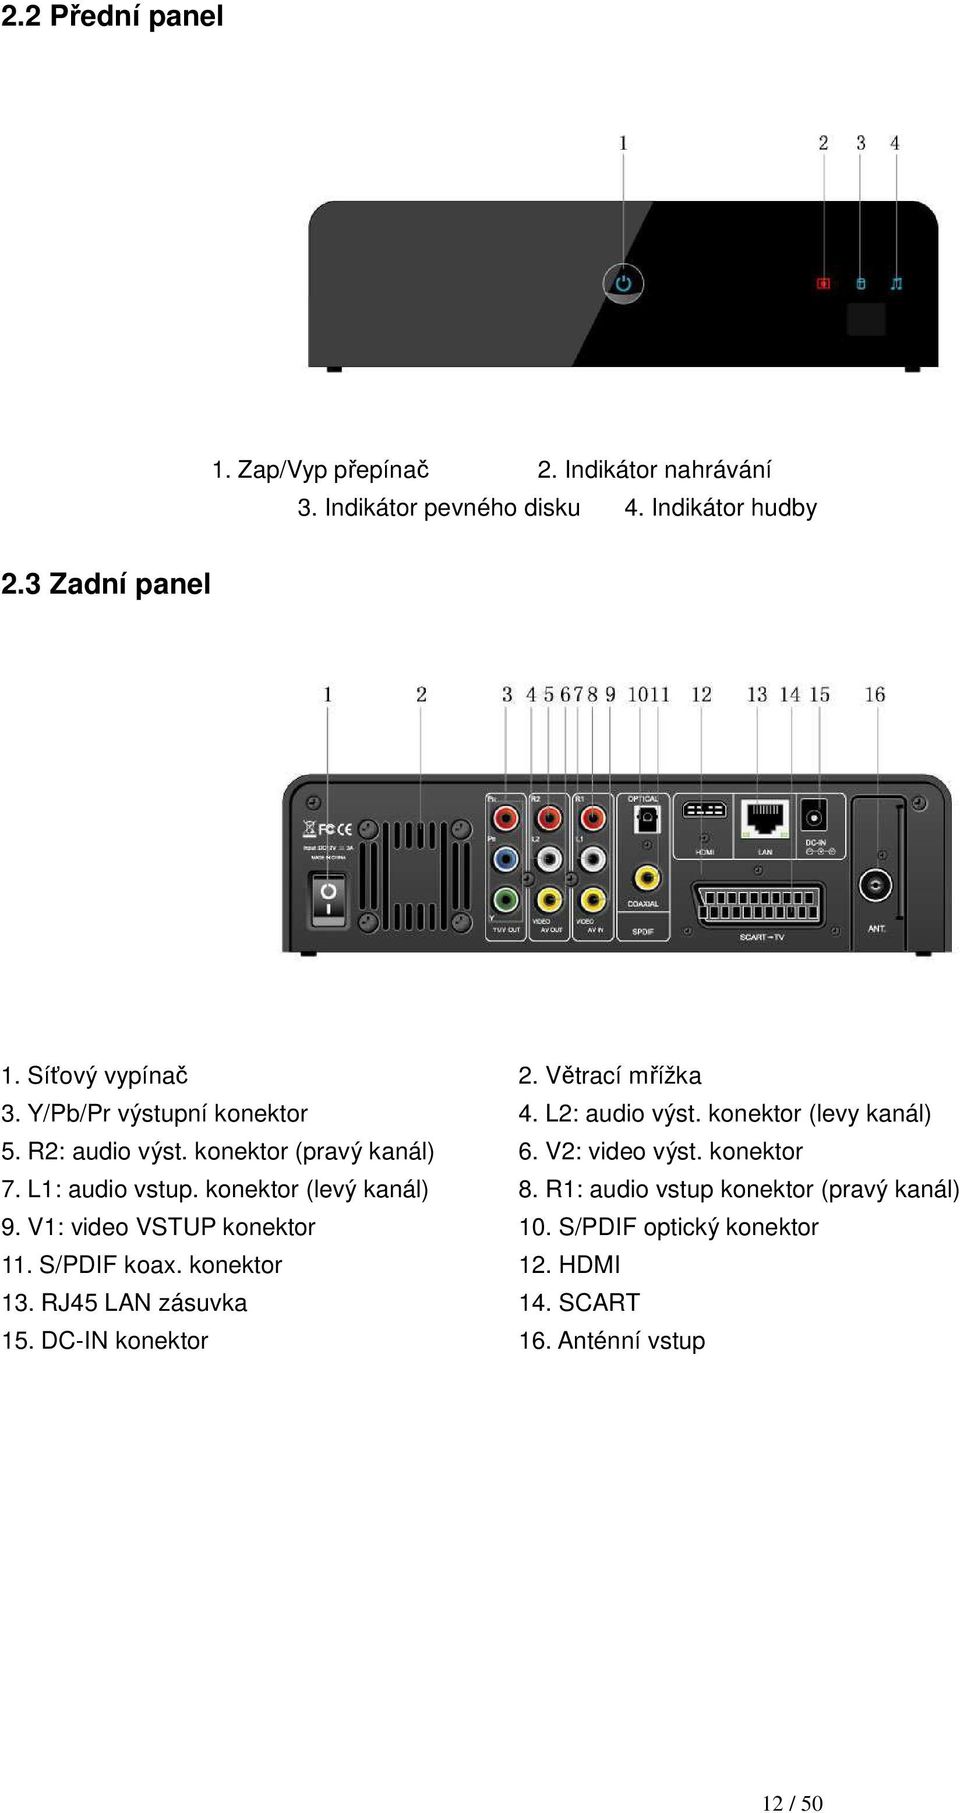 konektor (pravý kanál) 6. V2: video výst. konektor 7. L1: audio vstup. konektor (levý kanál) 8. R1: audio vstup konektor (pravý kanál) 9.